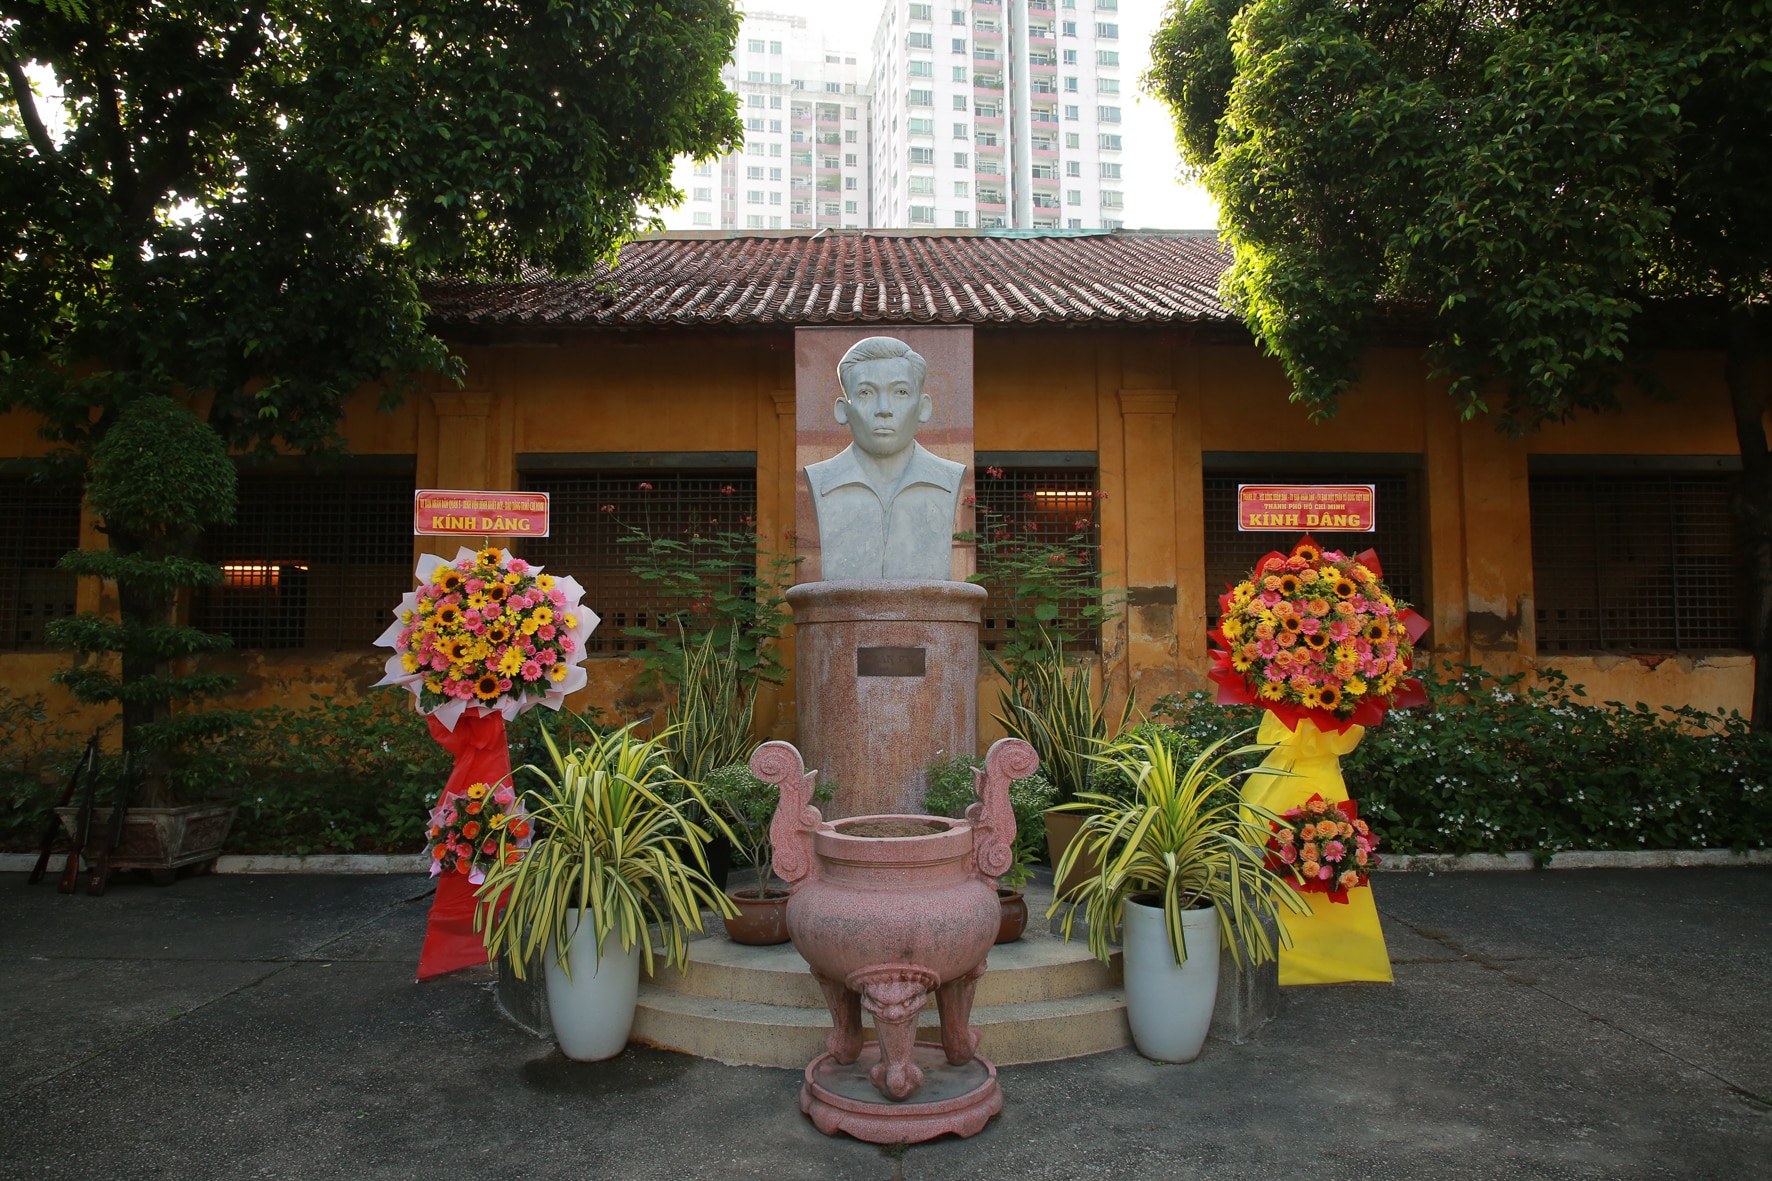 Khu trại giam Bệnh viện Chợ Quán, nơi Tổng Bí thư Trần Phú bị giam cầm gắn chặt với lịch sử Sài Gòn-Gia Định  - Ảnh 2.